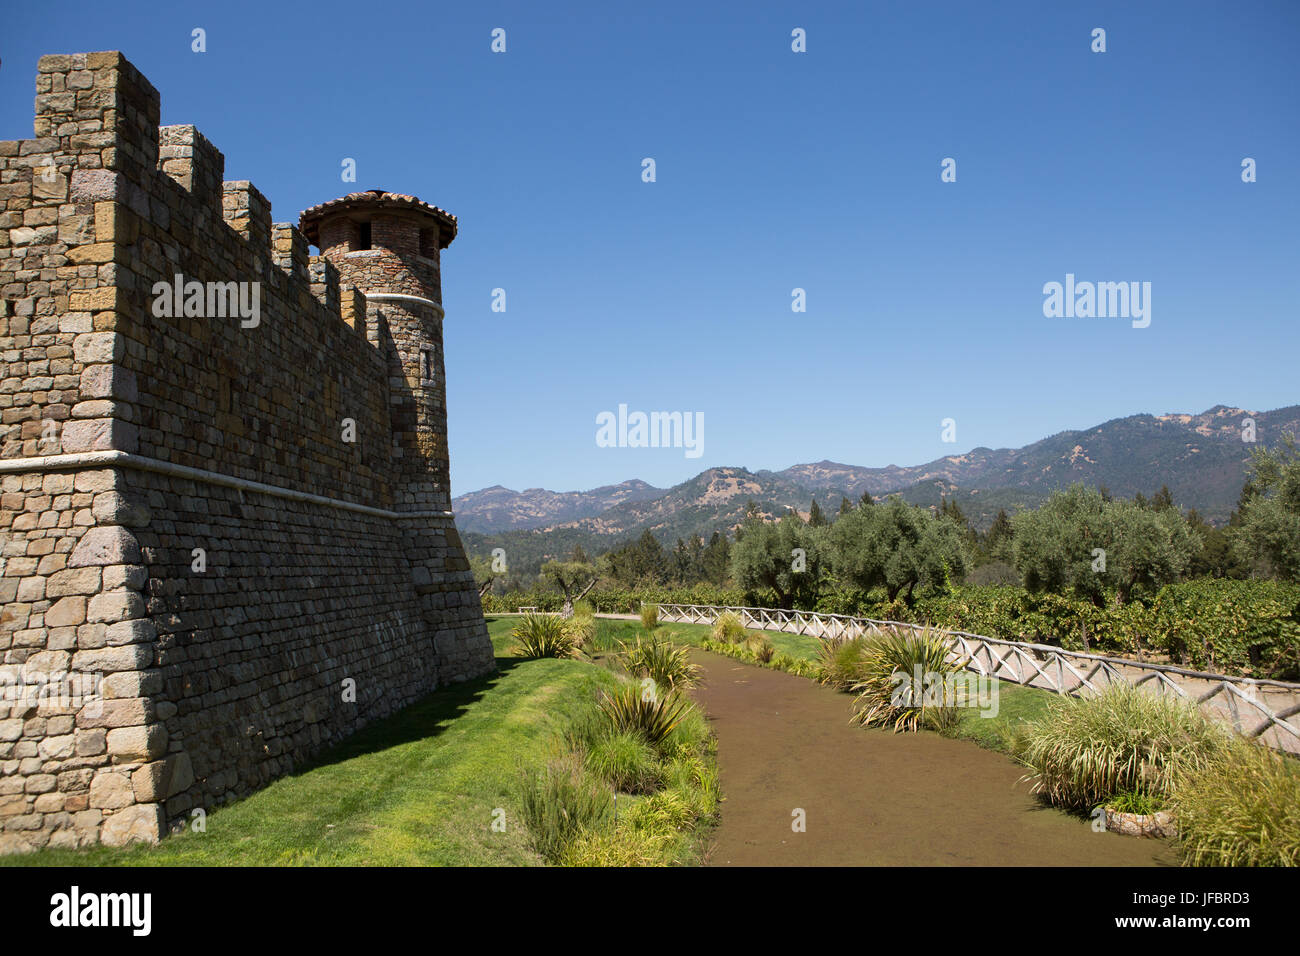 Die Architektur von Castello di Amorosa, ein Weingut im Napa Valley, gestaltet wie ein Schloss. Stockfoto